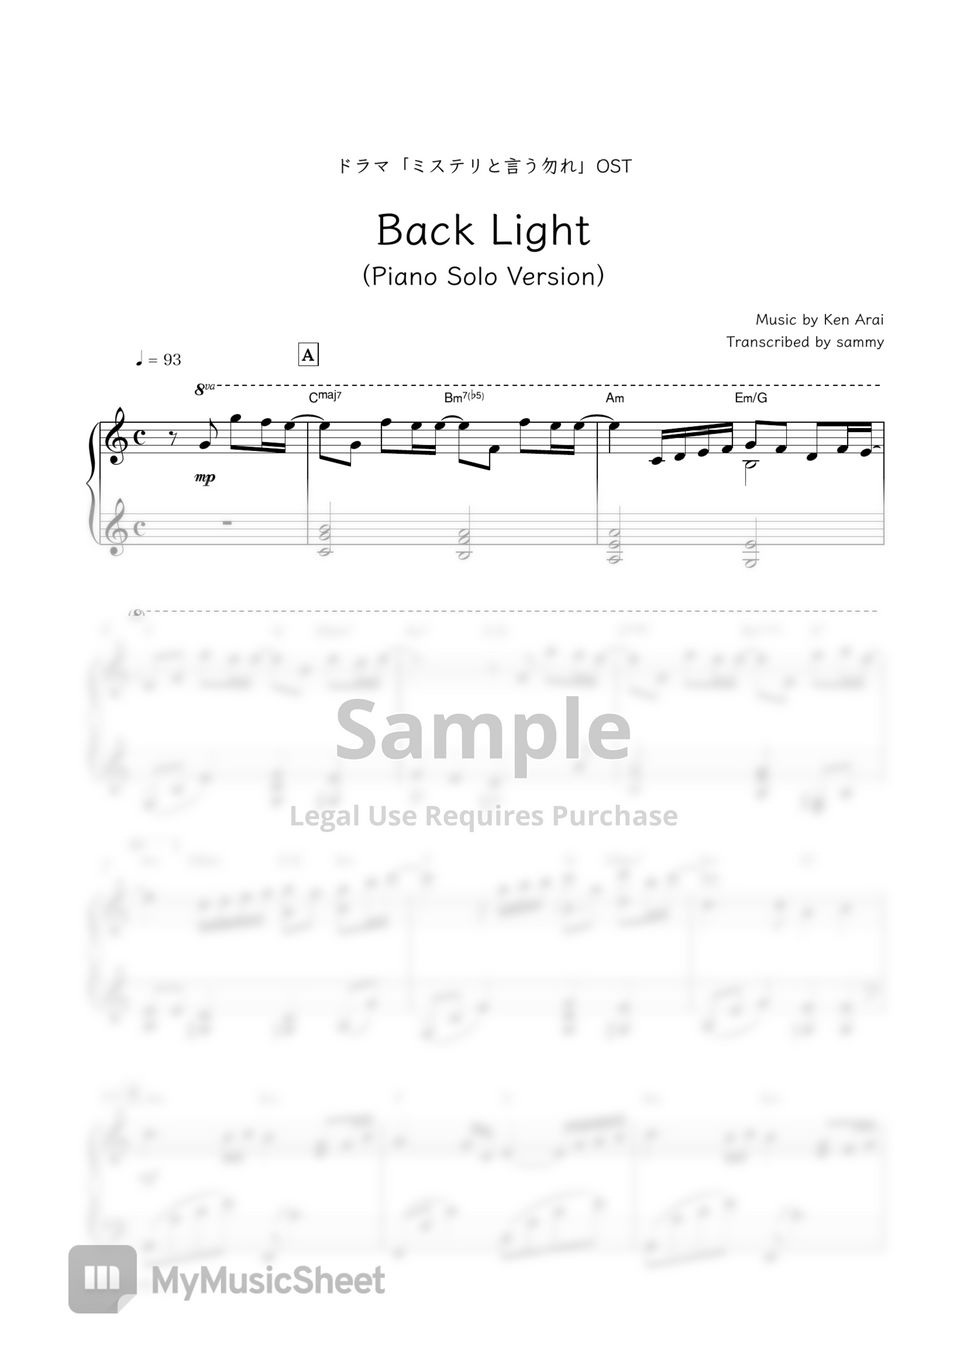 ドラマ『ミステリと言う勿れ』OST - Back Light (Piano Solo Version) by sammy